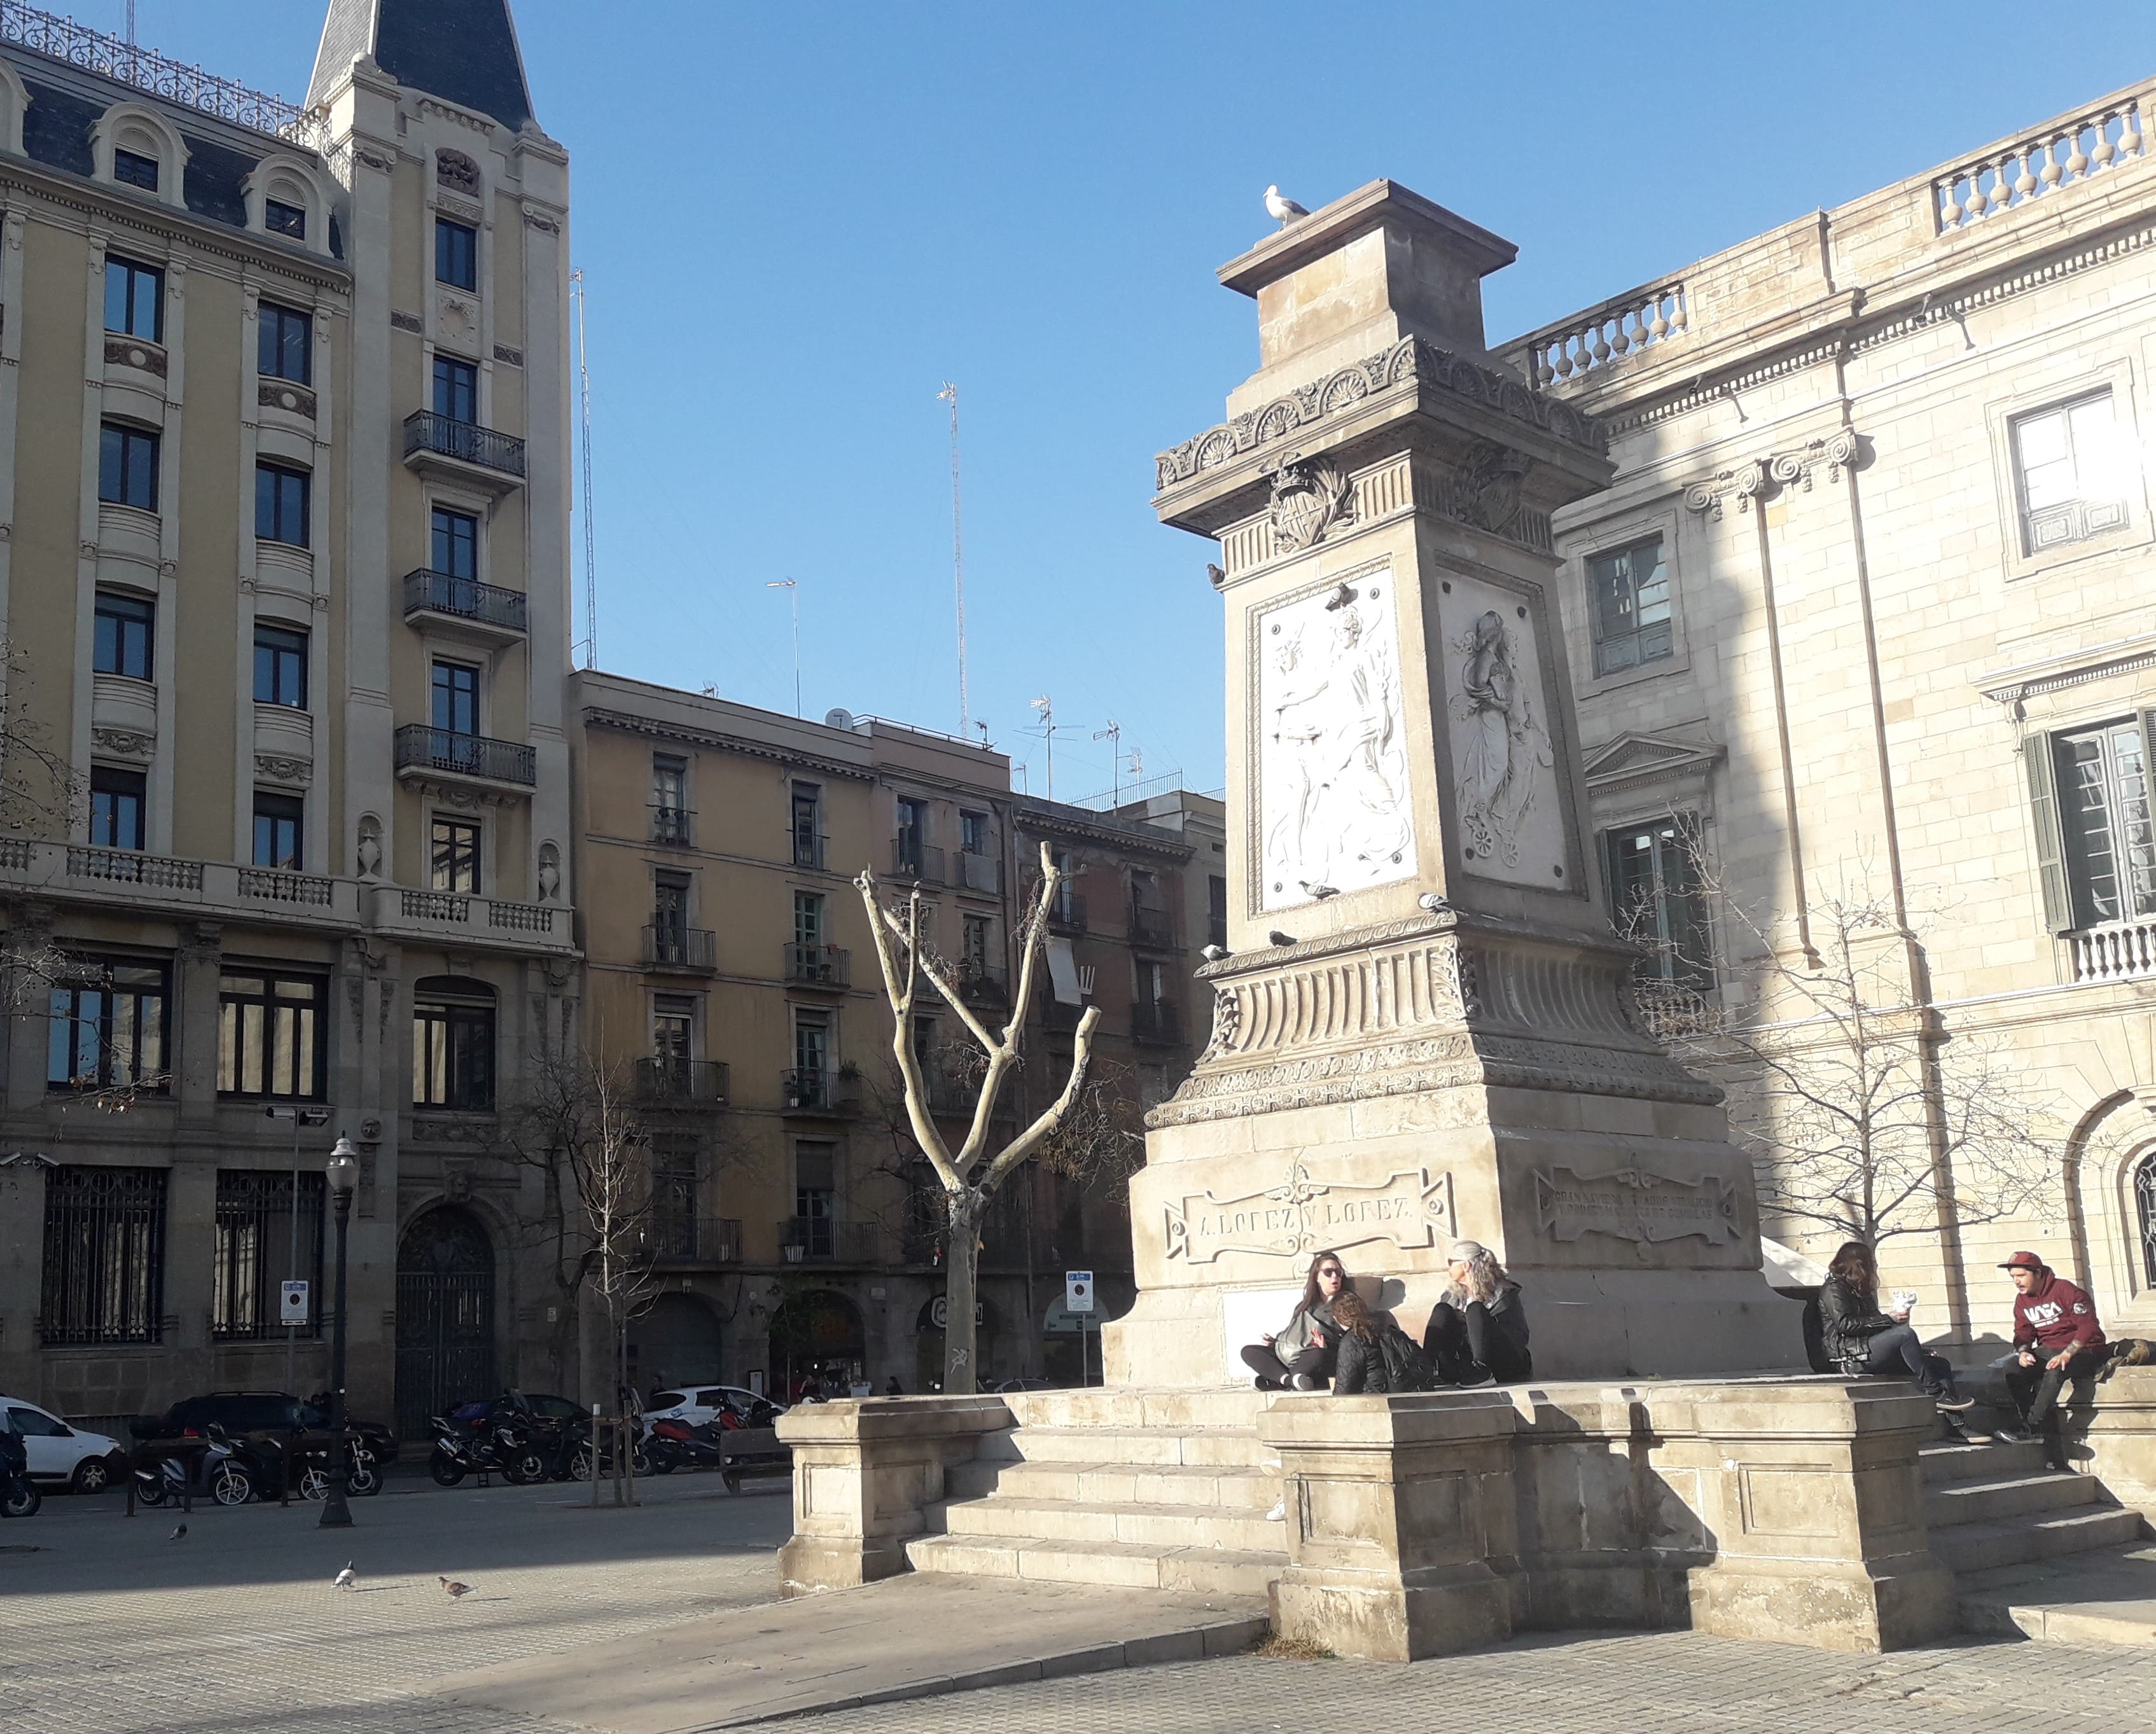 Pedestal del monumento al traficante de africanos Antonio López en Barcelona, con inscripciones explicativas de facto ilocalizables delante de los coches, al fondo a la izquierda